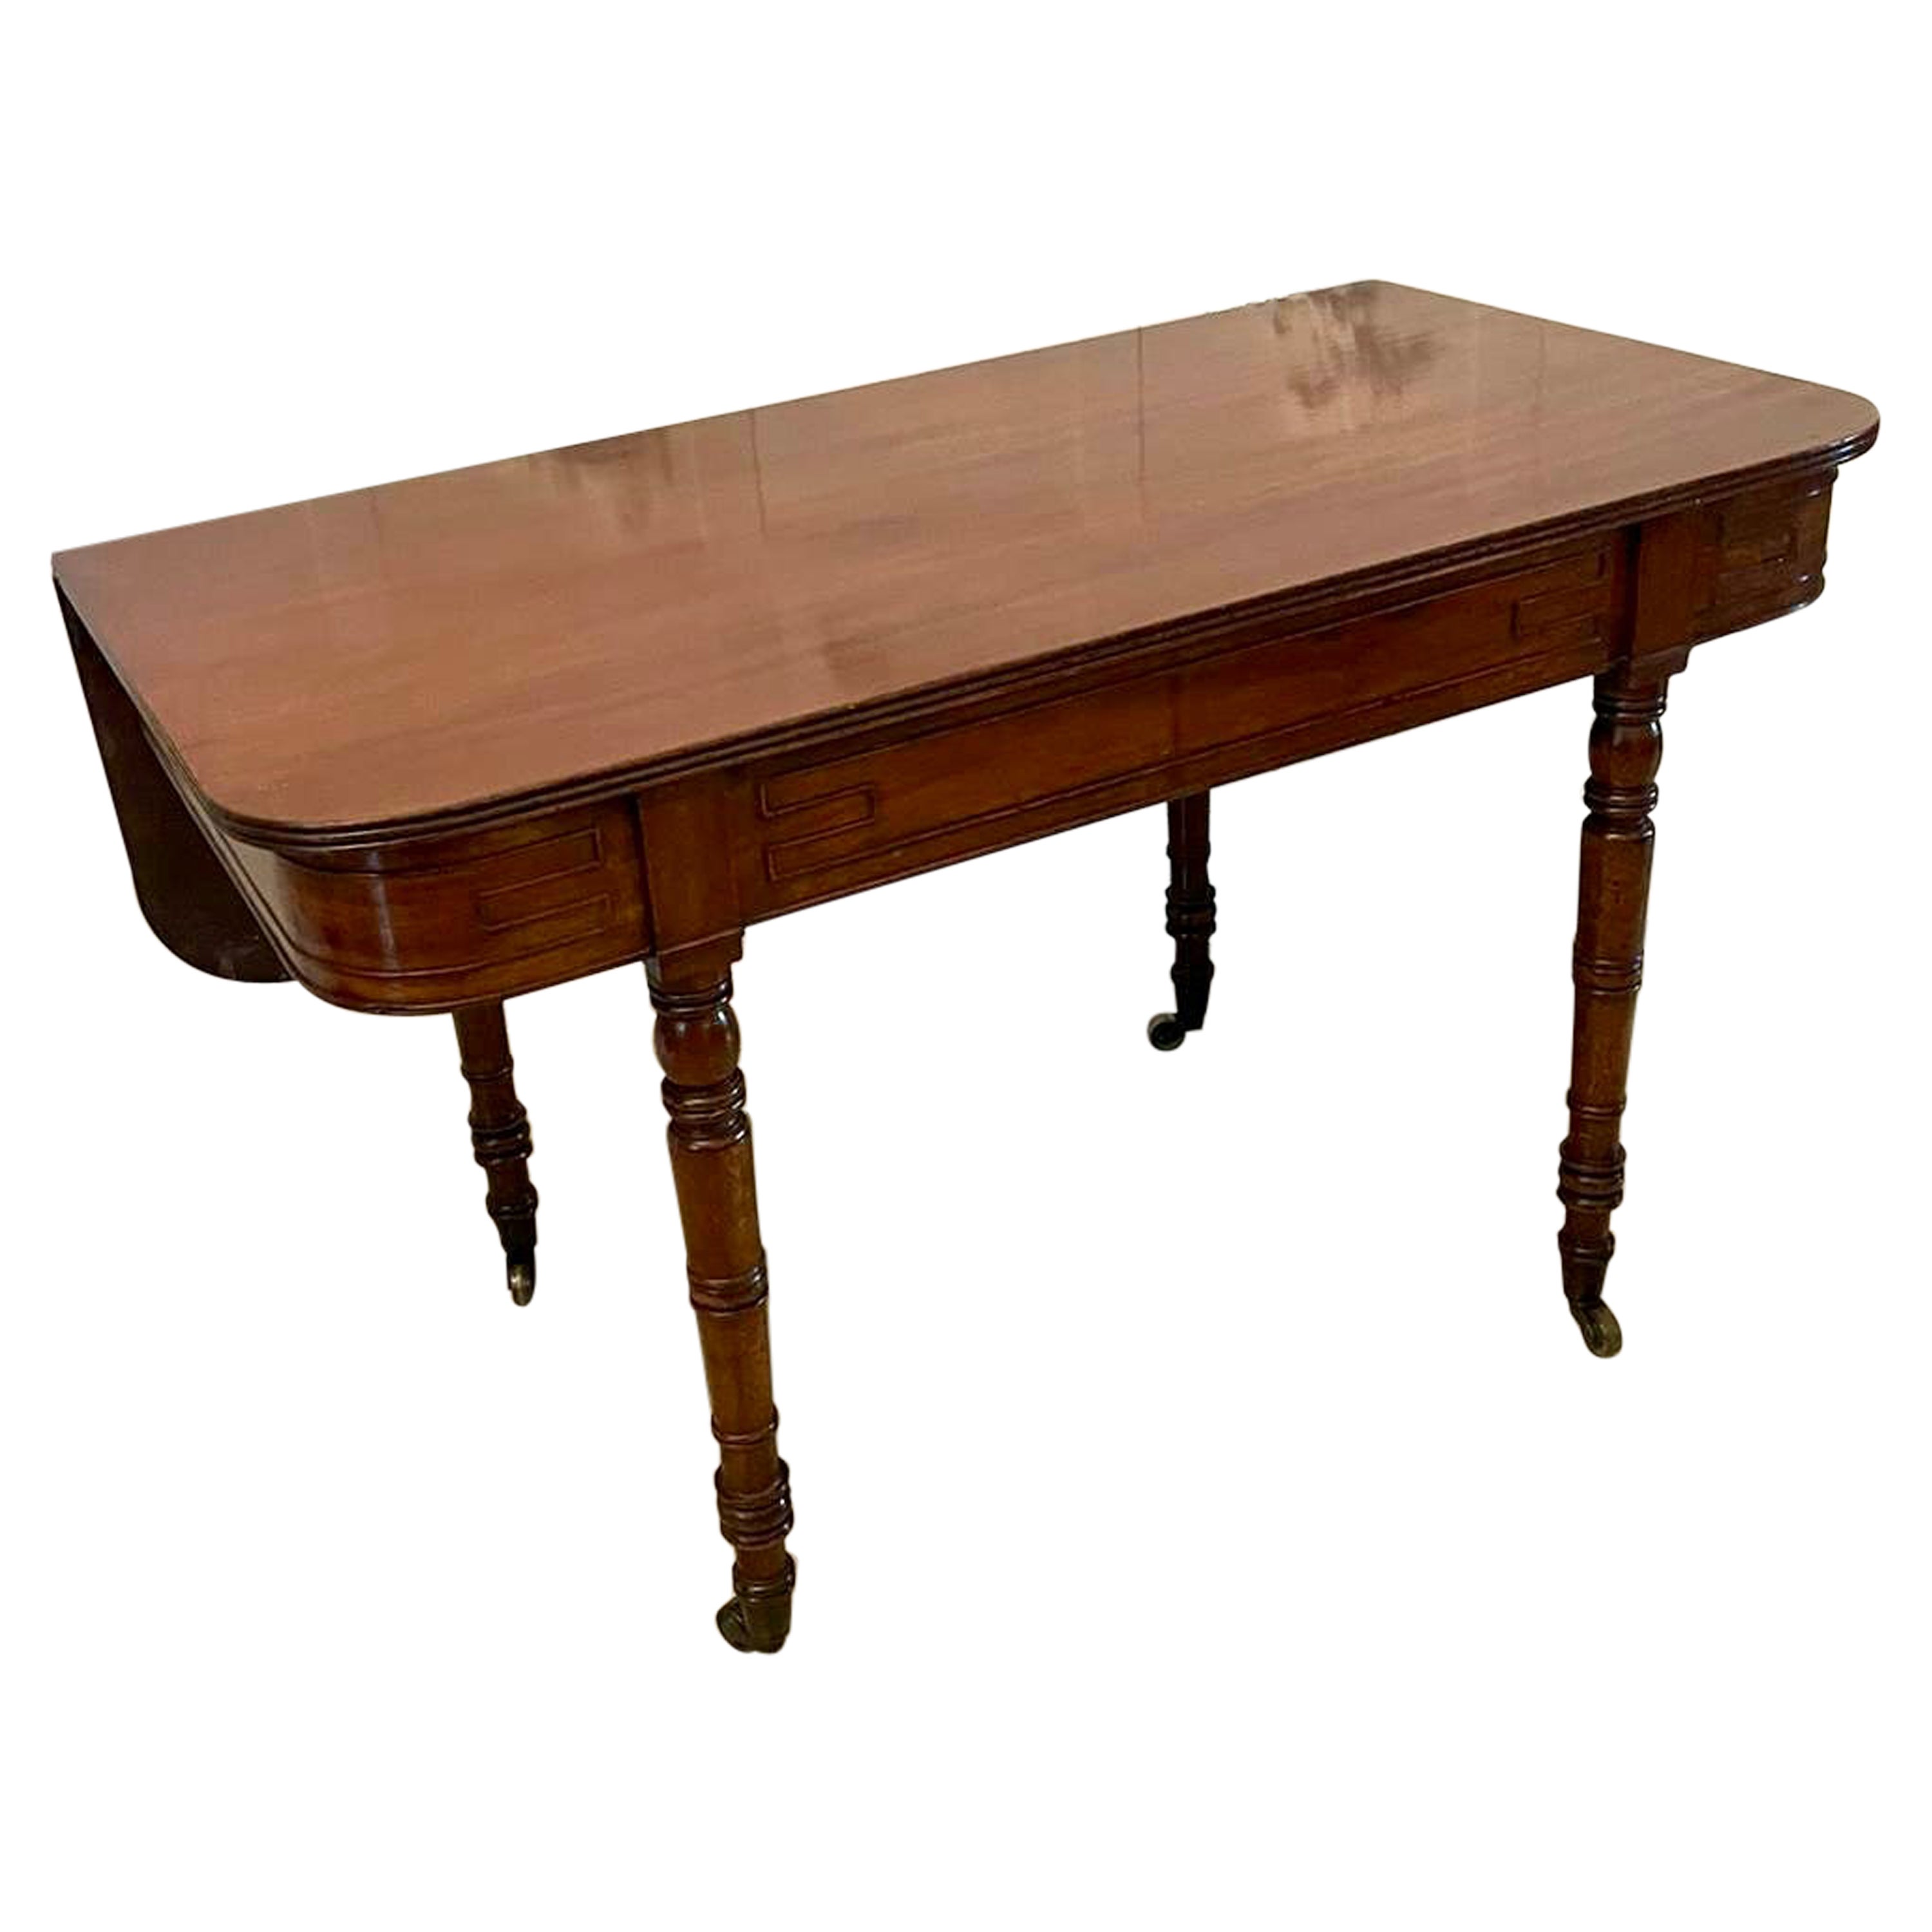 Inhabituelle table console ancienne en acajou de qualité George III